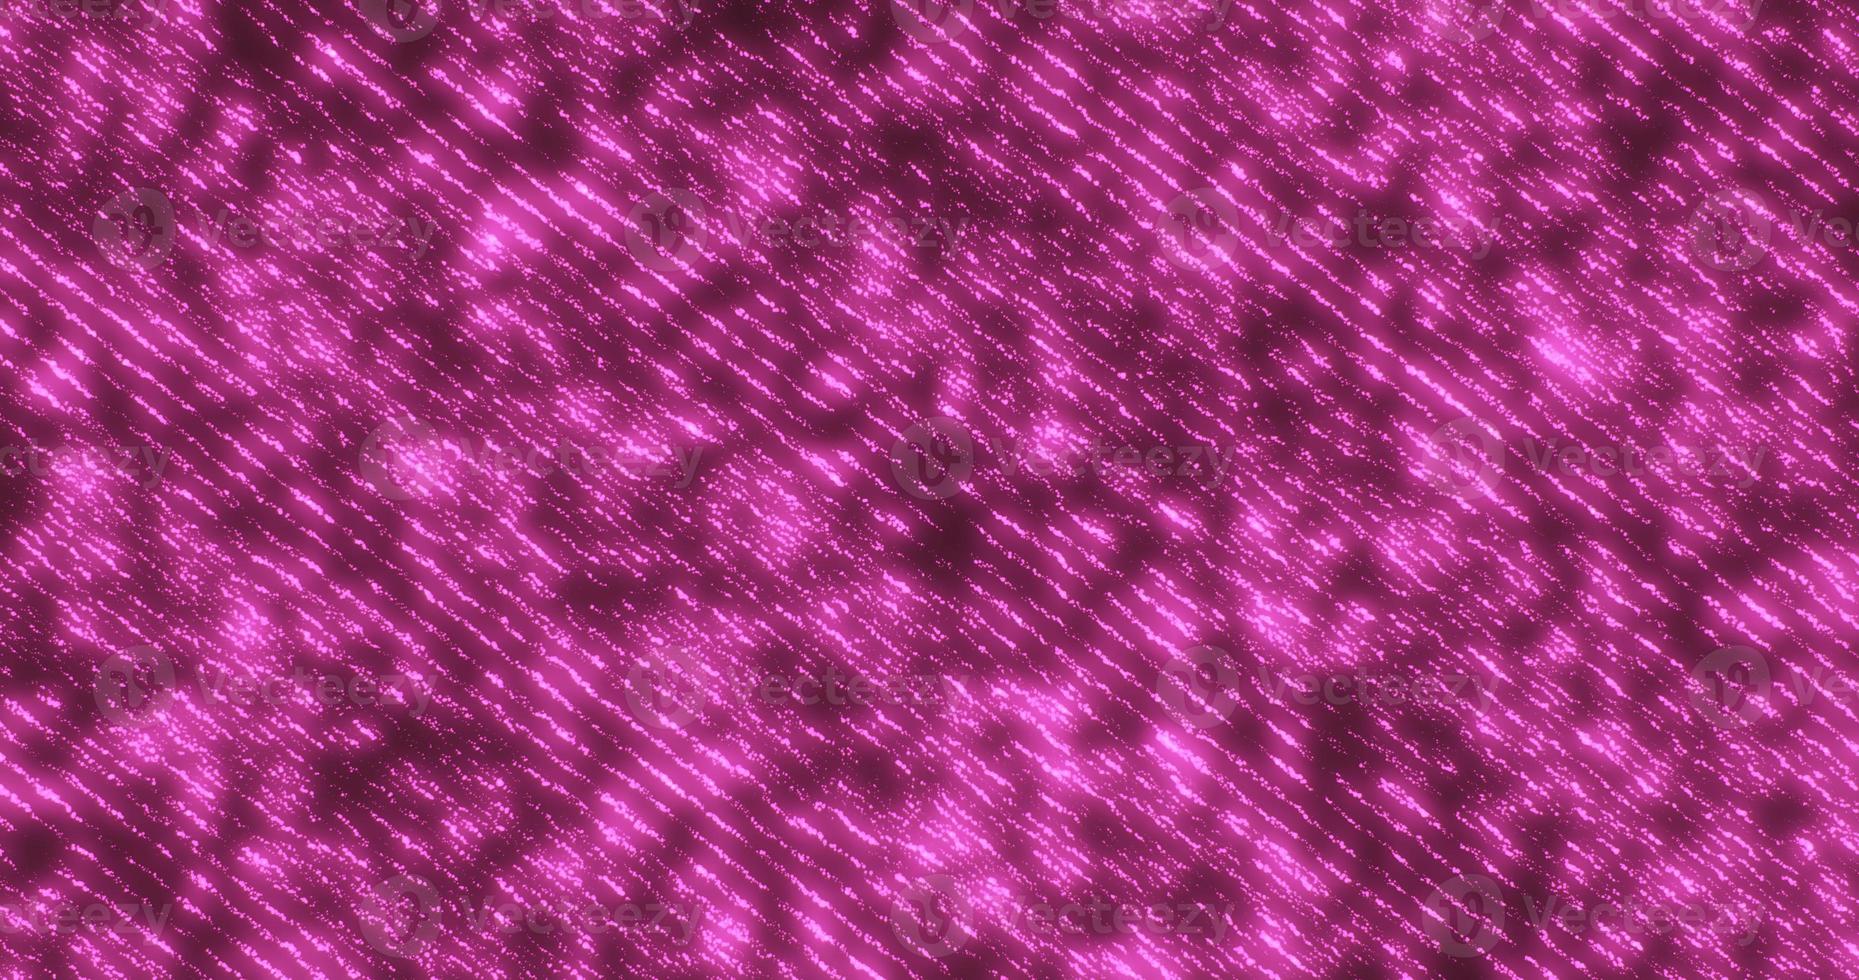 fond abstrait de rayures violettes volantes et de lignes diagonales avec un effet lumineux festif brillant beau futuriste hi-tech photo